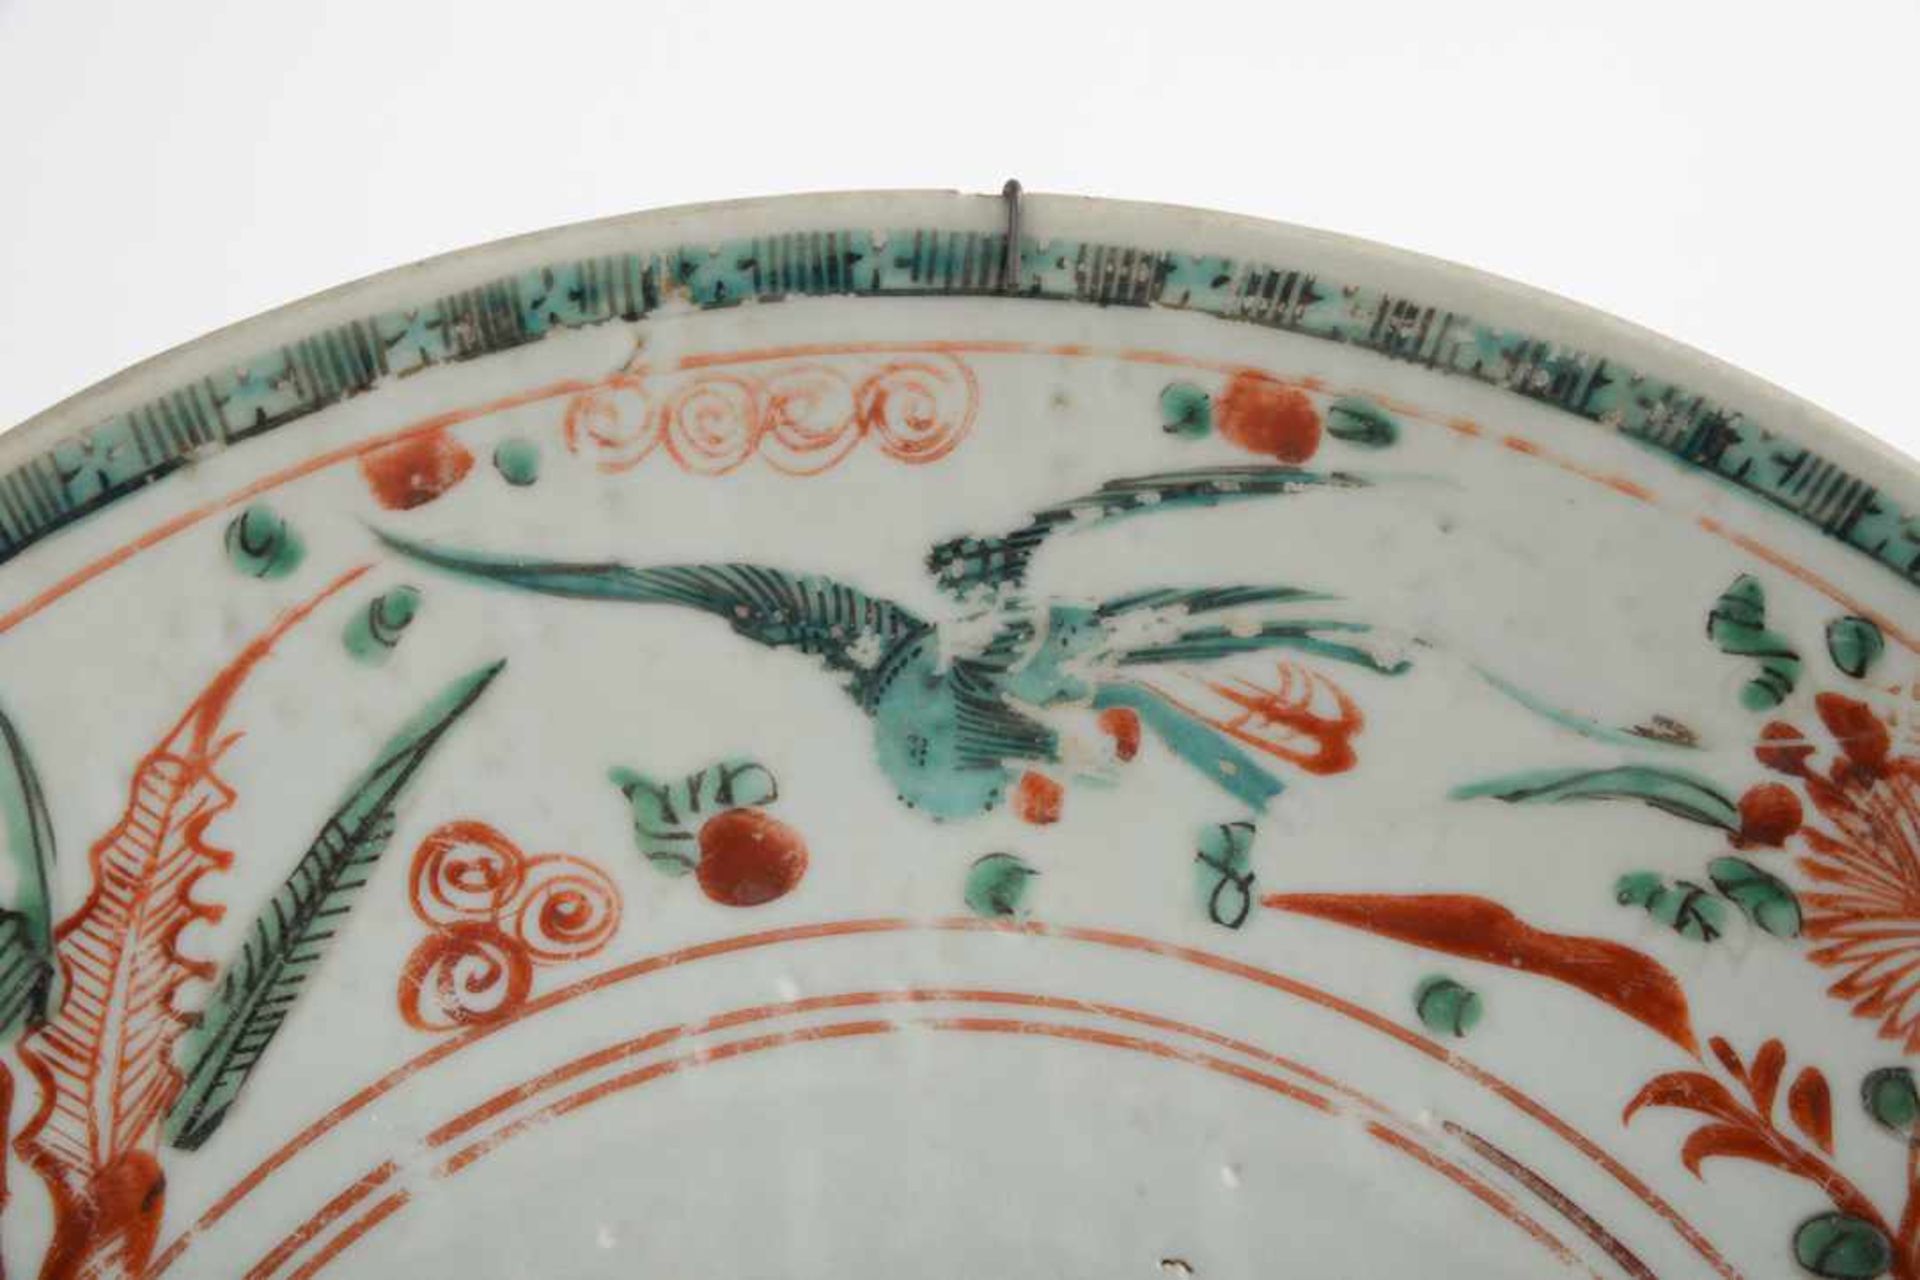 Swatow Ware Ming-Dynastie, 17. Jahrhundert. Große Schale, Seladon-Glasur, 3-Farben Malerei in - Bild 3 aus 7